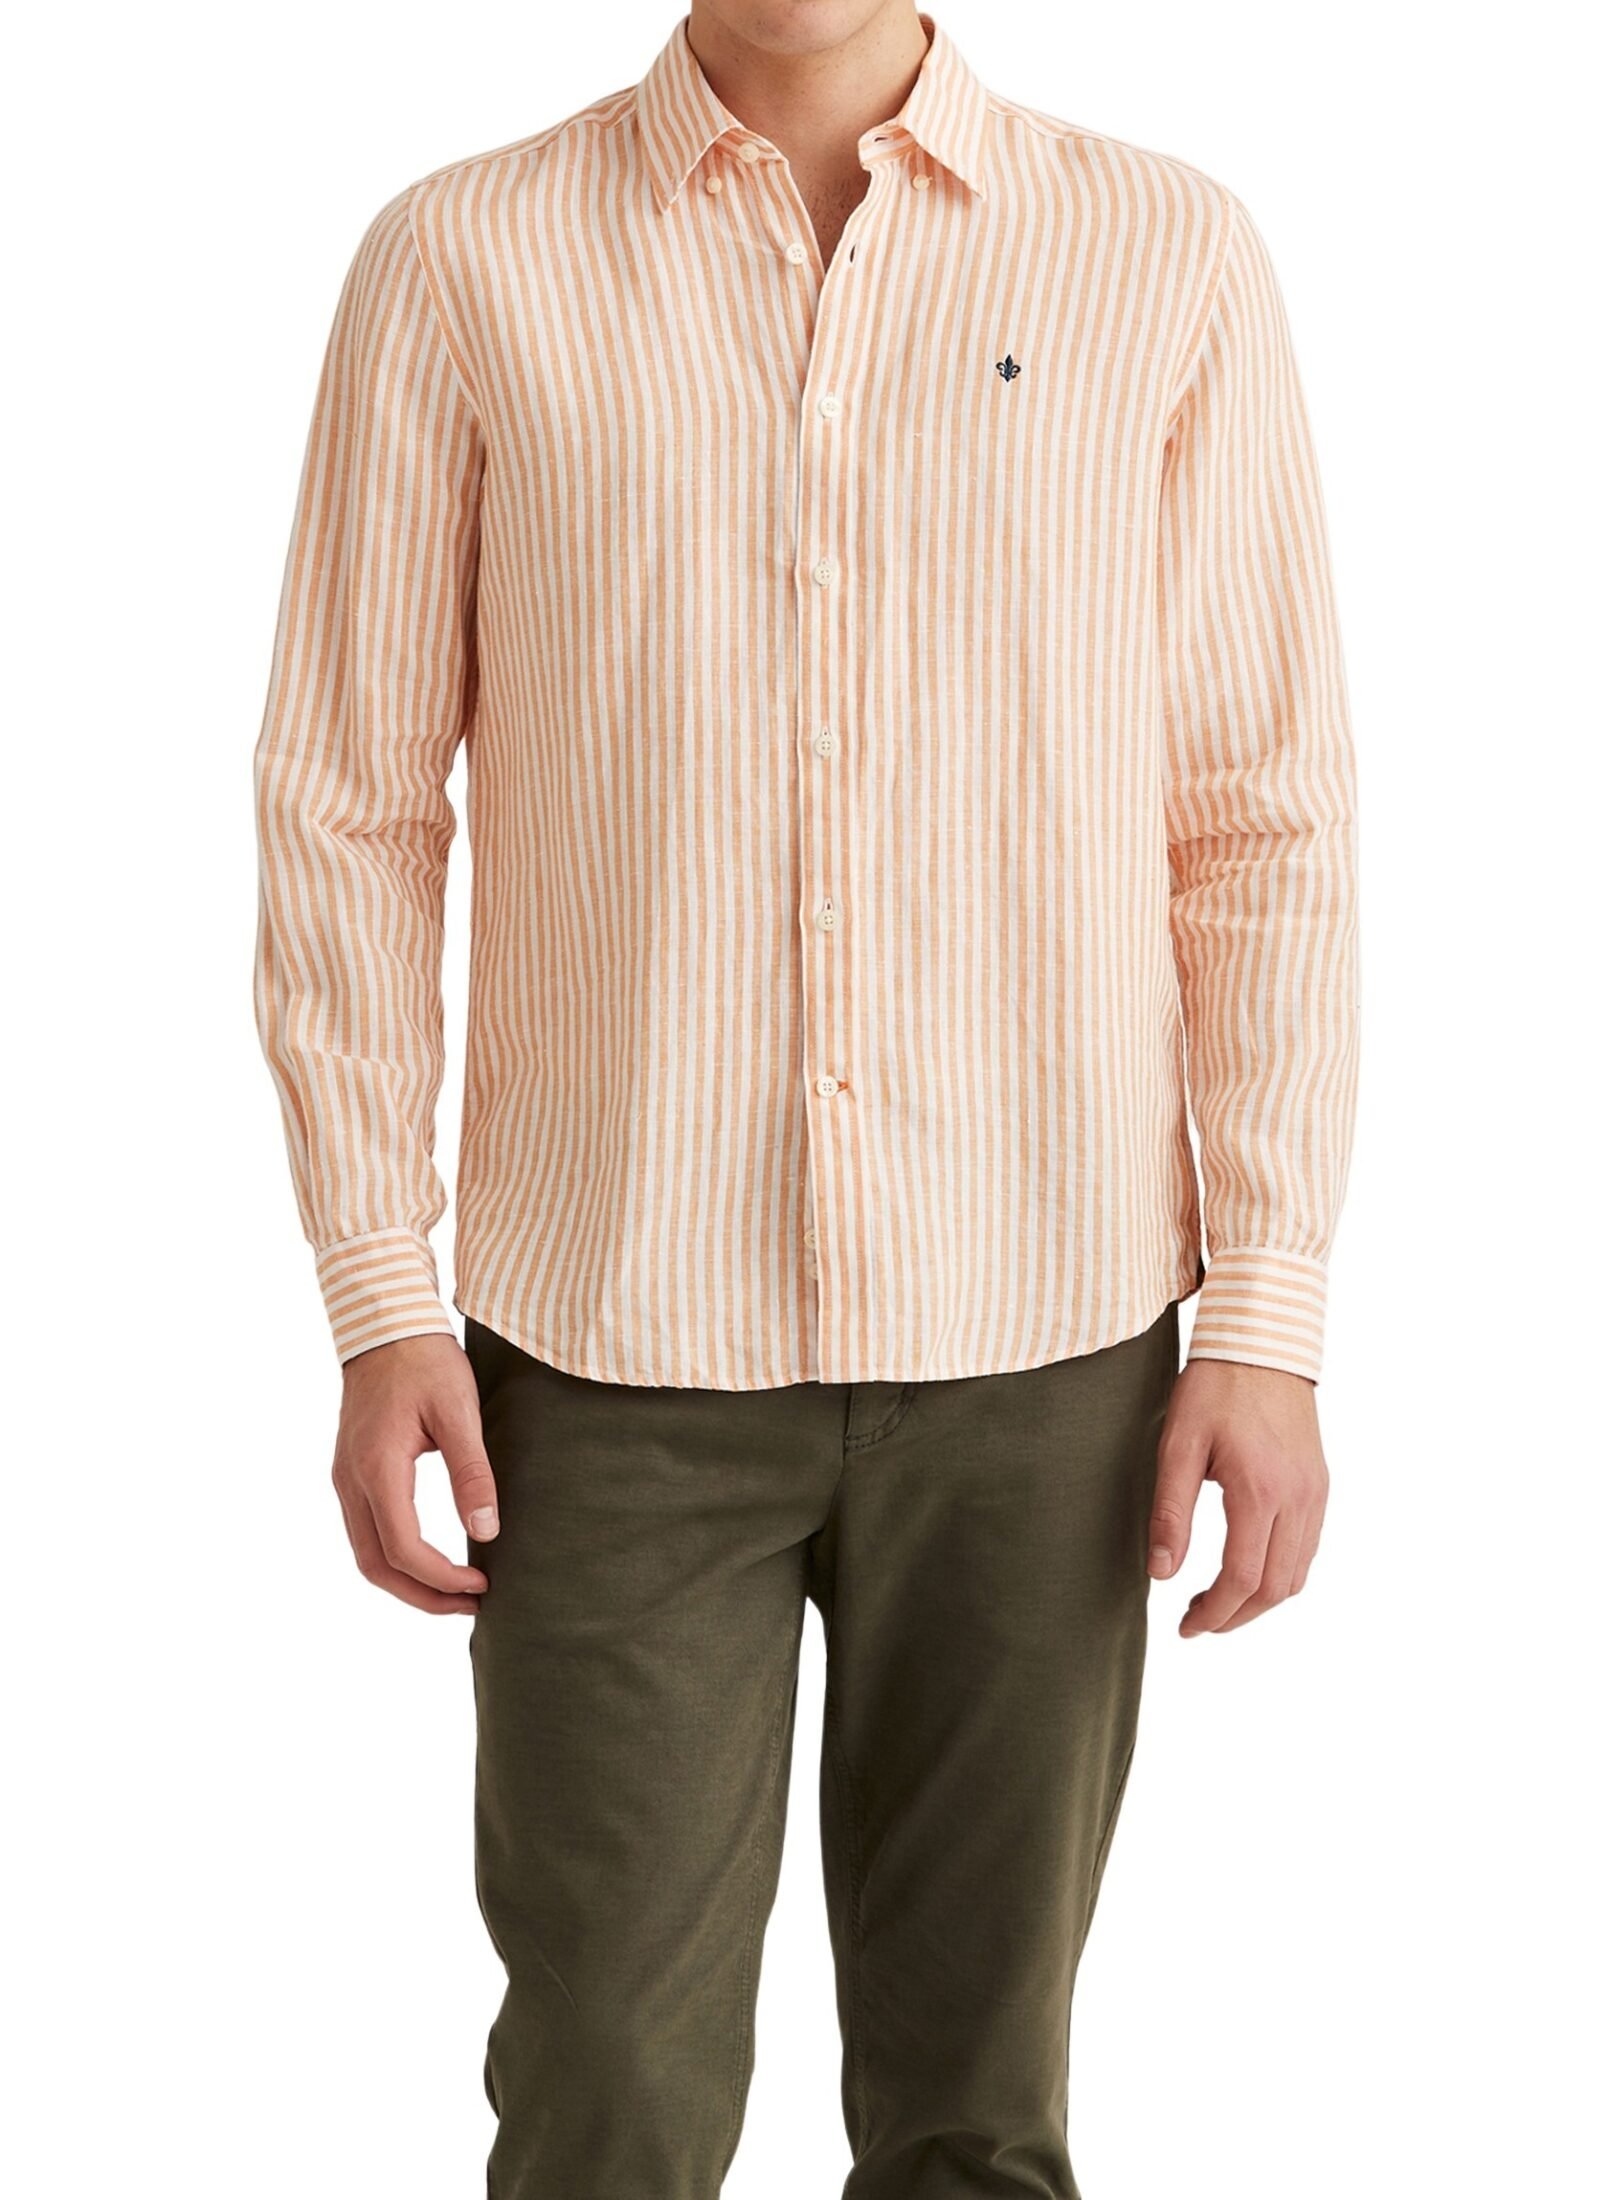 801602-douglas-linen-stripe-bd-shirt-20-orange-1